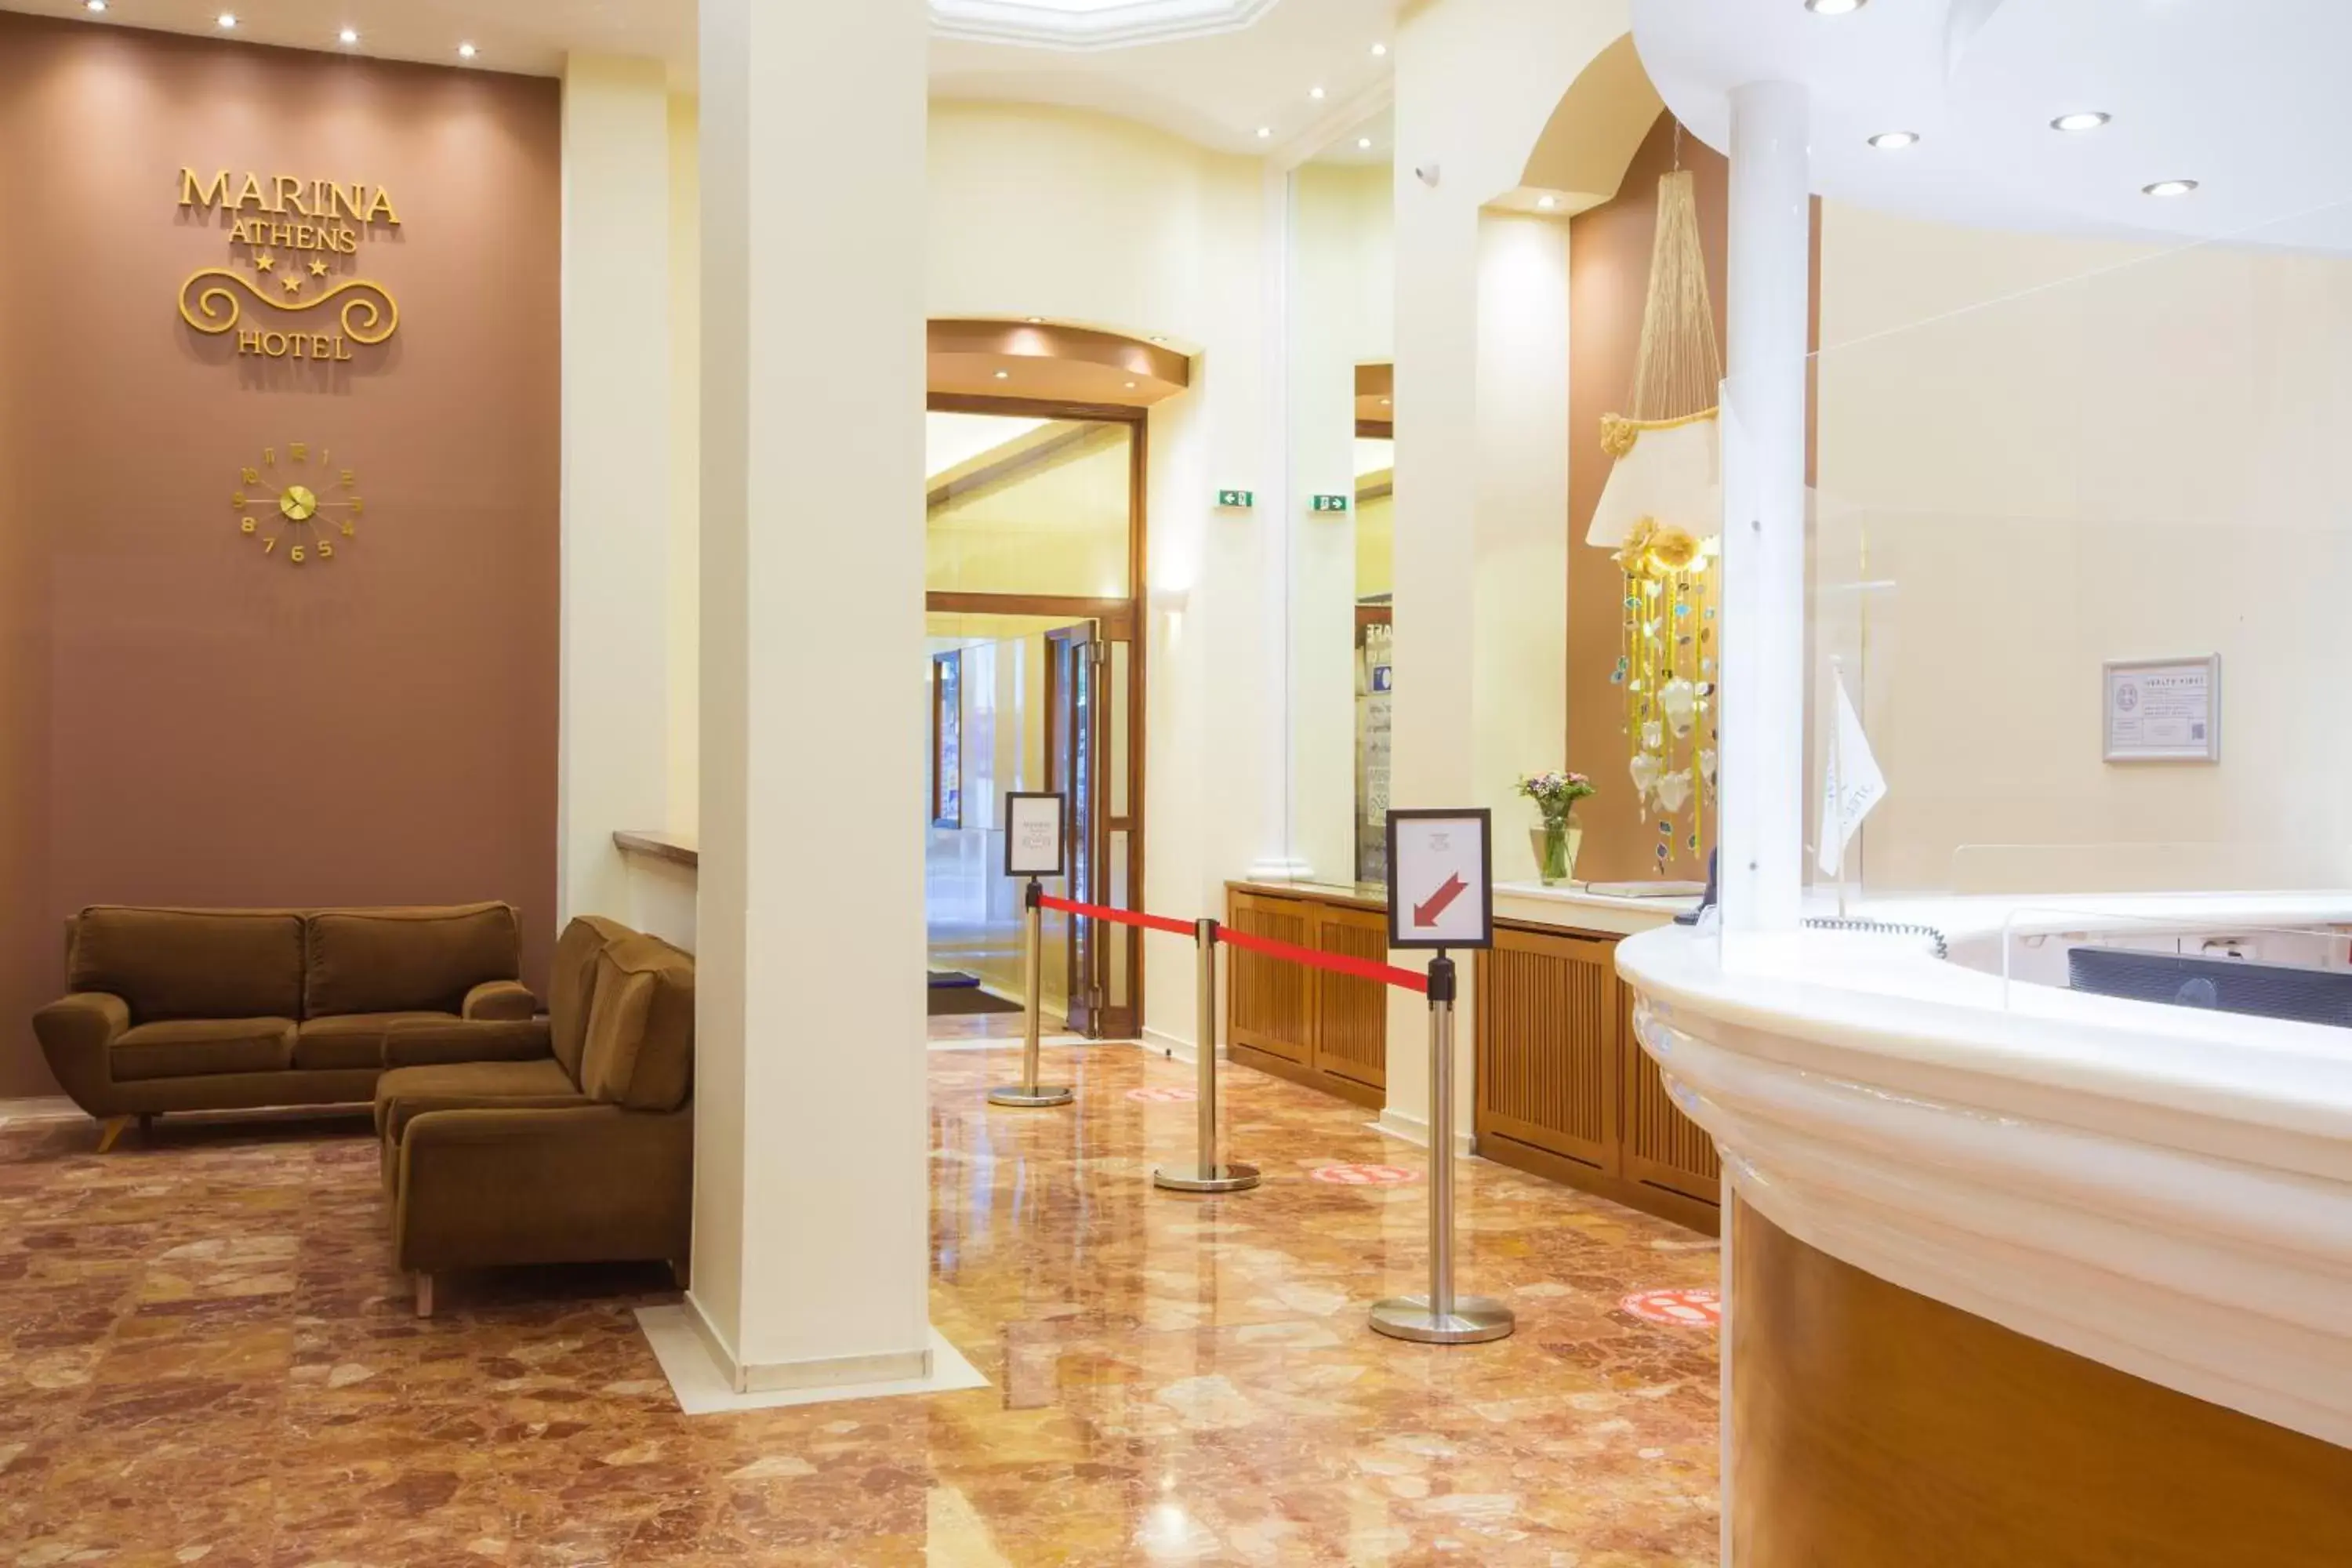 Lobby or reception in Hotel Marina